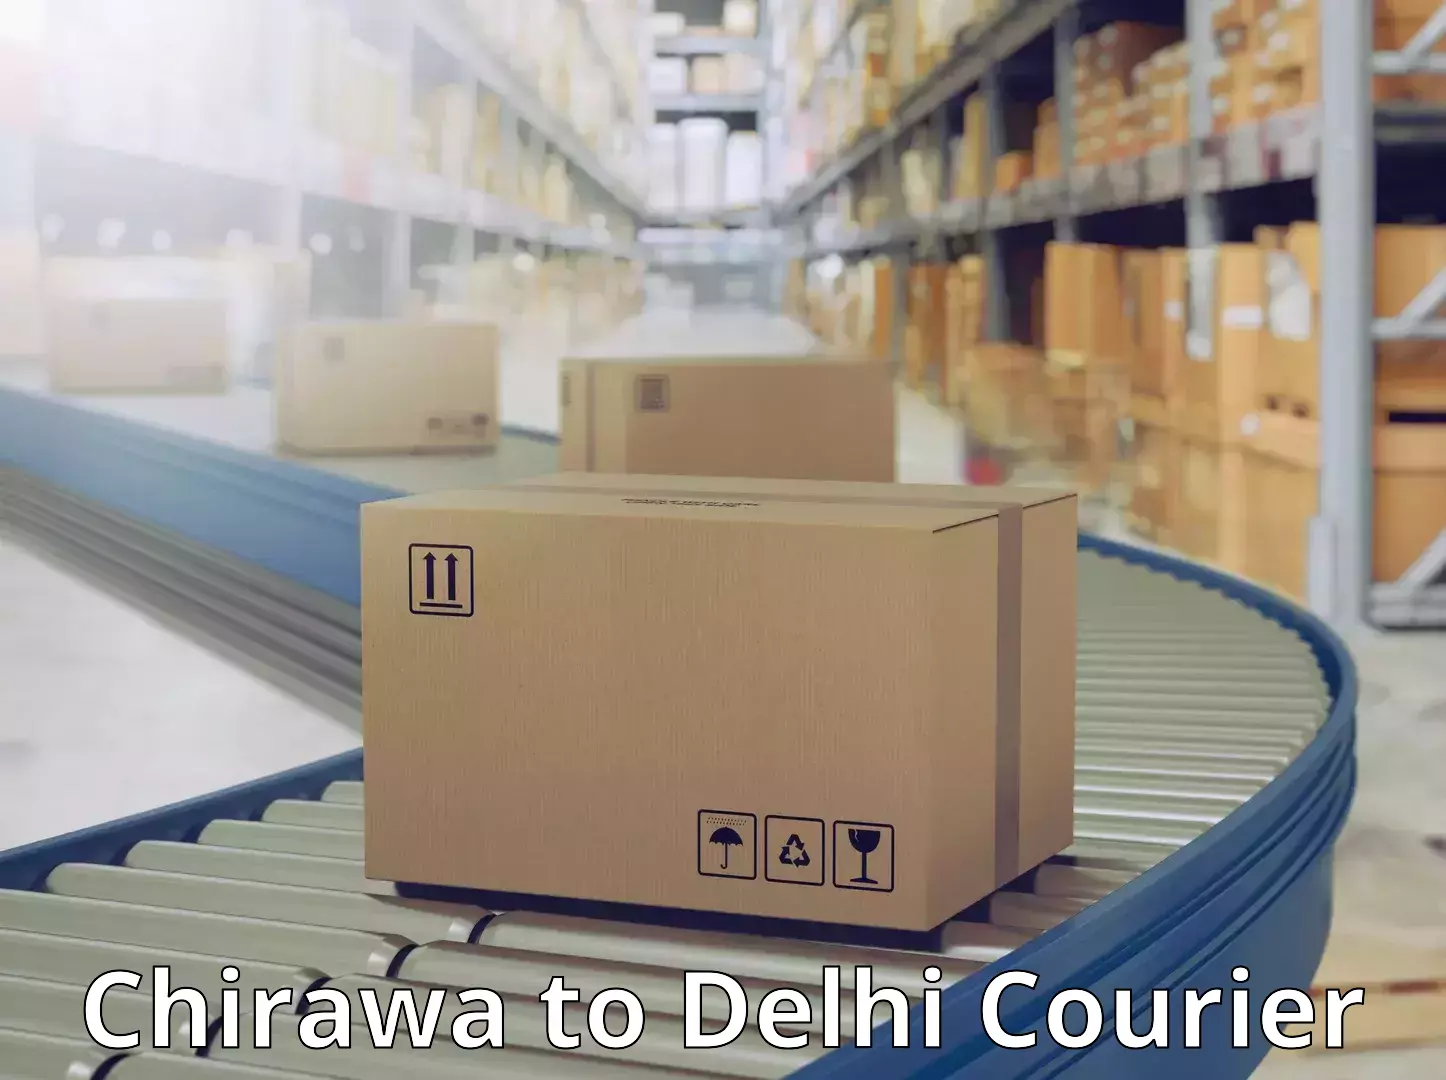 Courier service comparison Chirawa to NIT Delhi